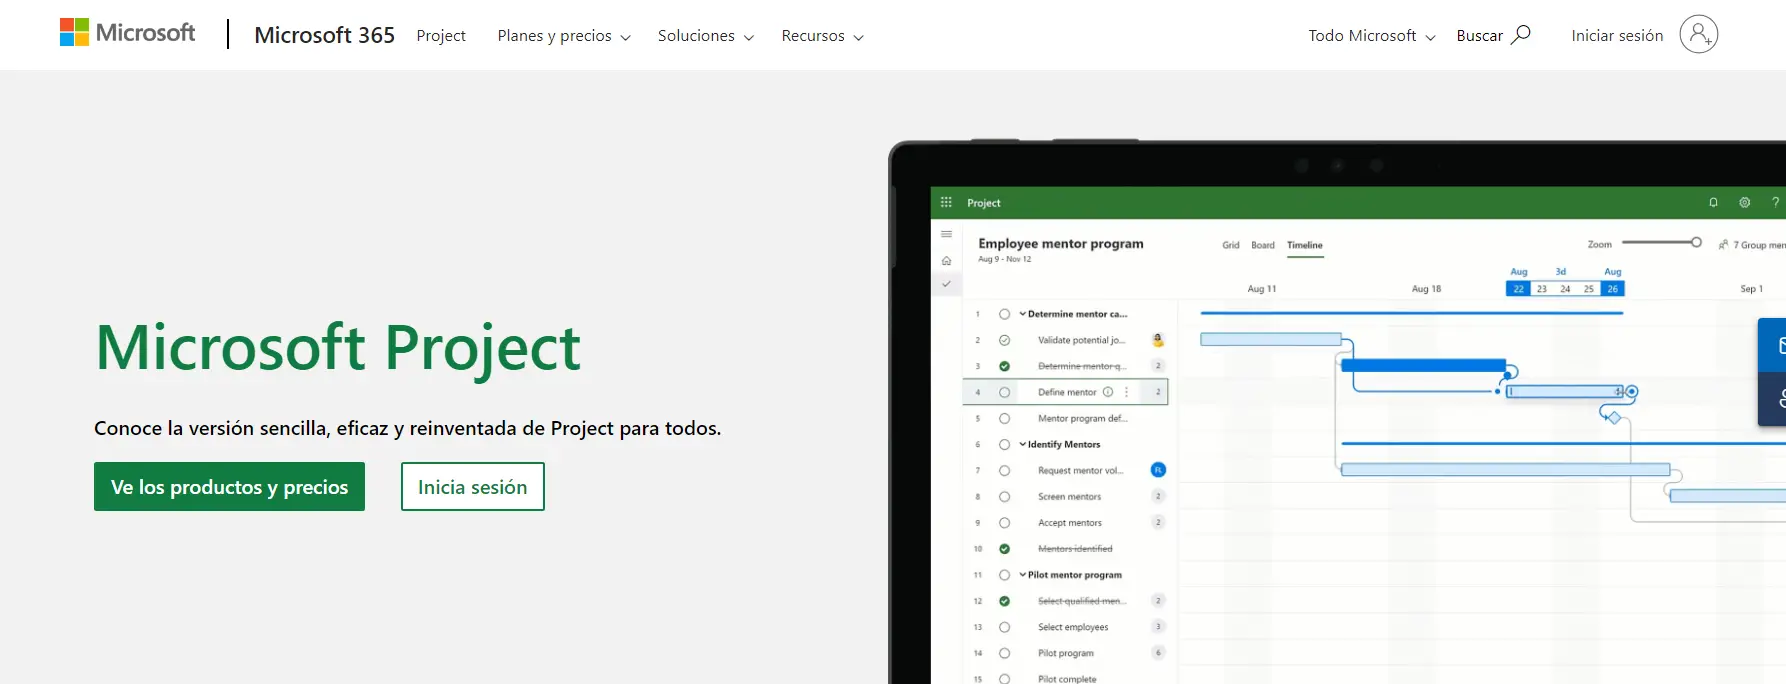 Microsoft Project Gestión integral de proyectos con enfoque en colaboración y datos